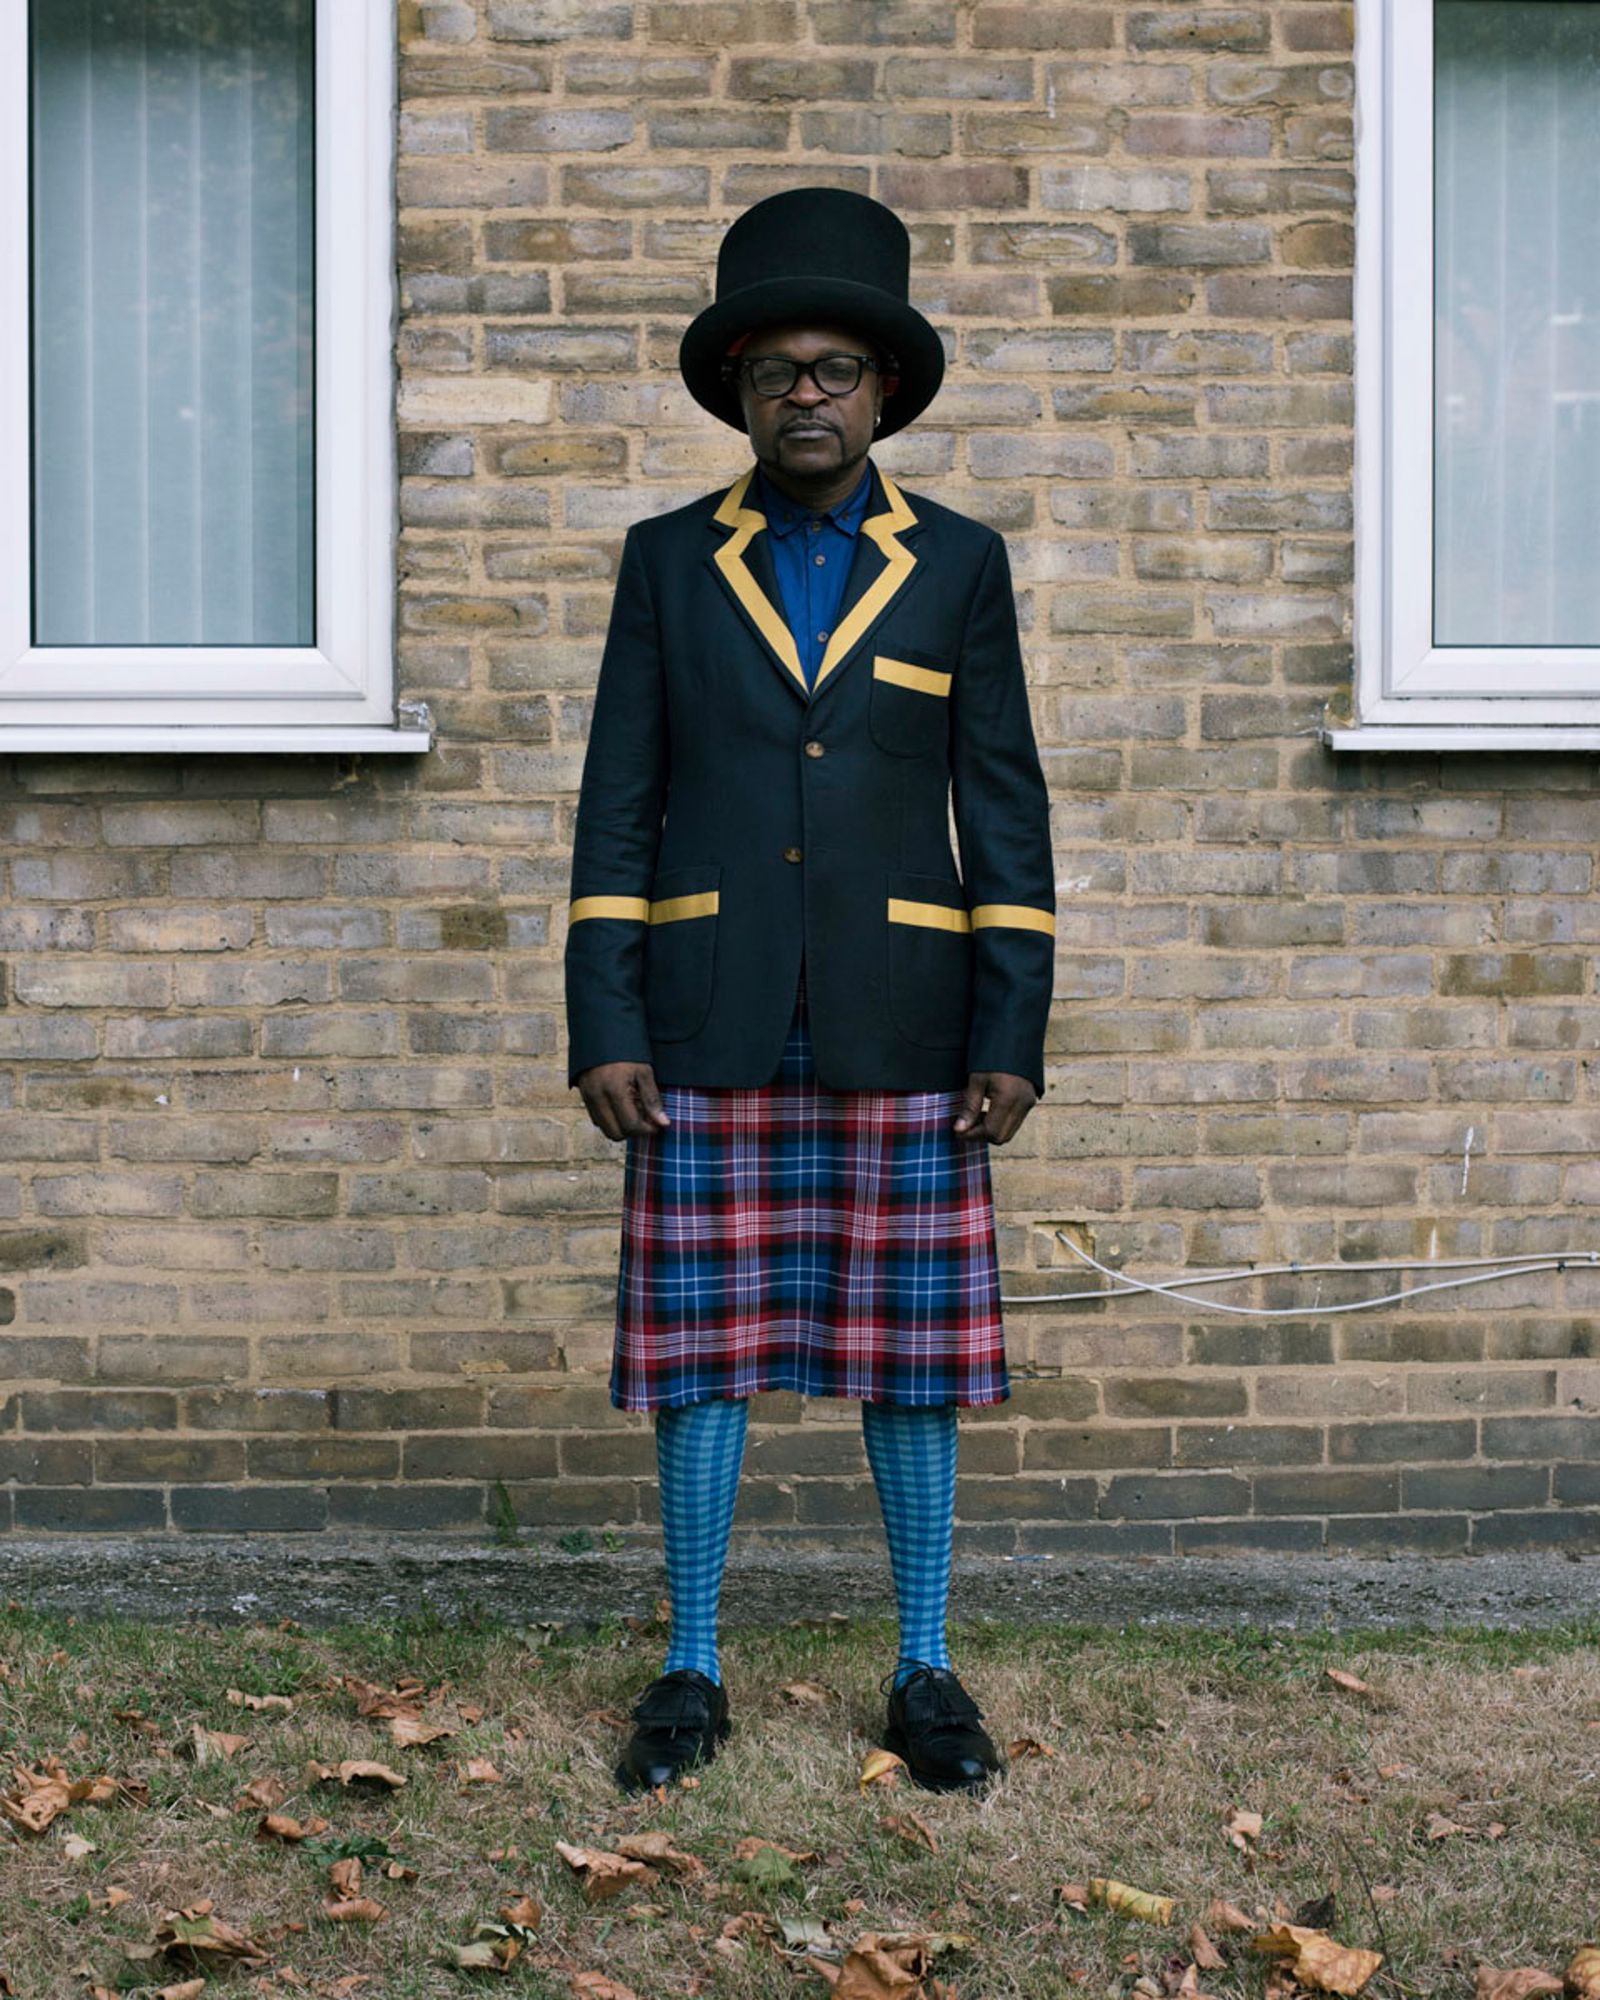 © alice mann - Eustache Seke in Vivienne Westwood, London, 2016